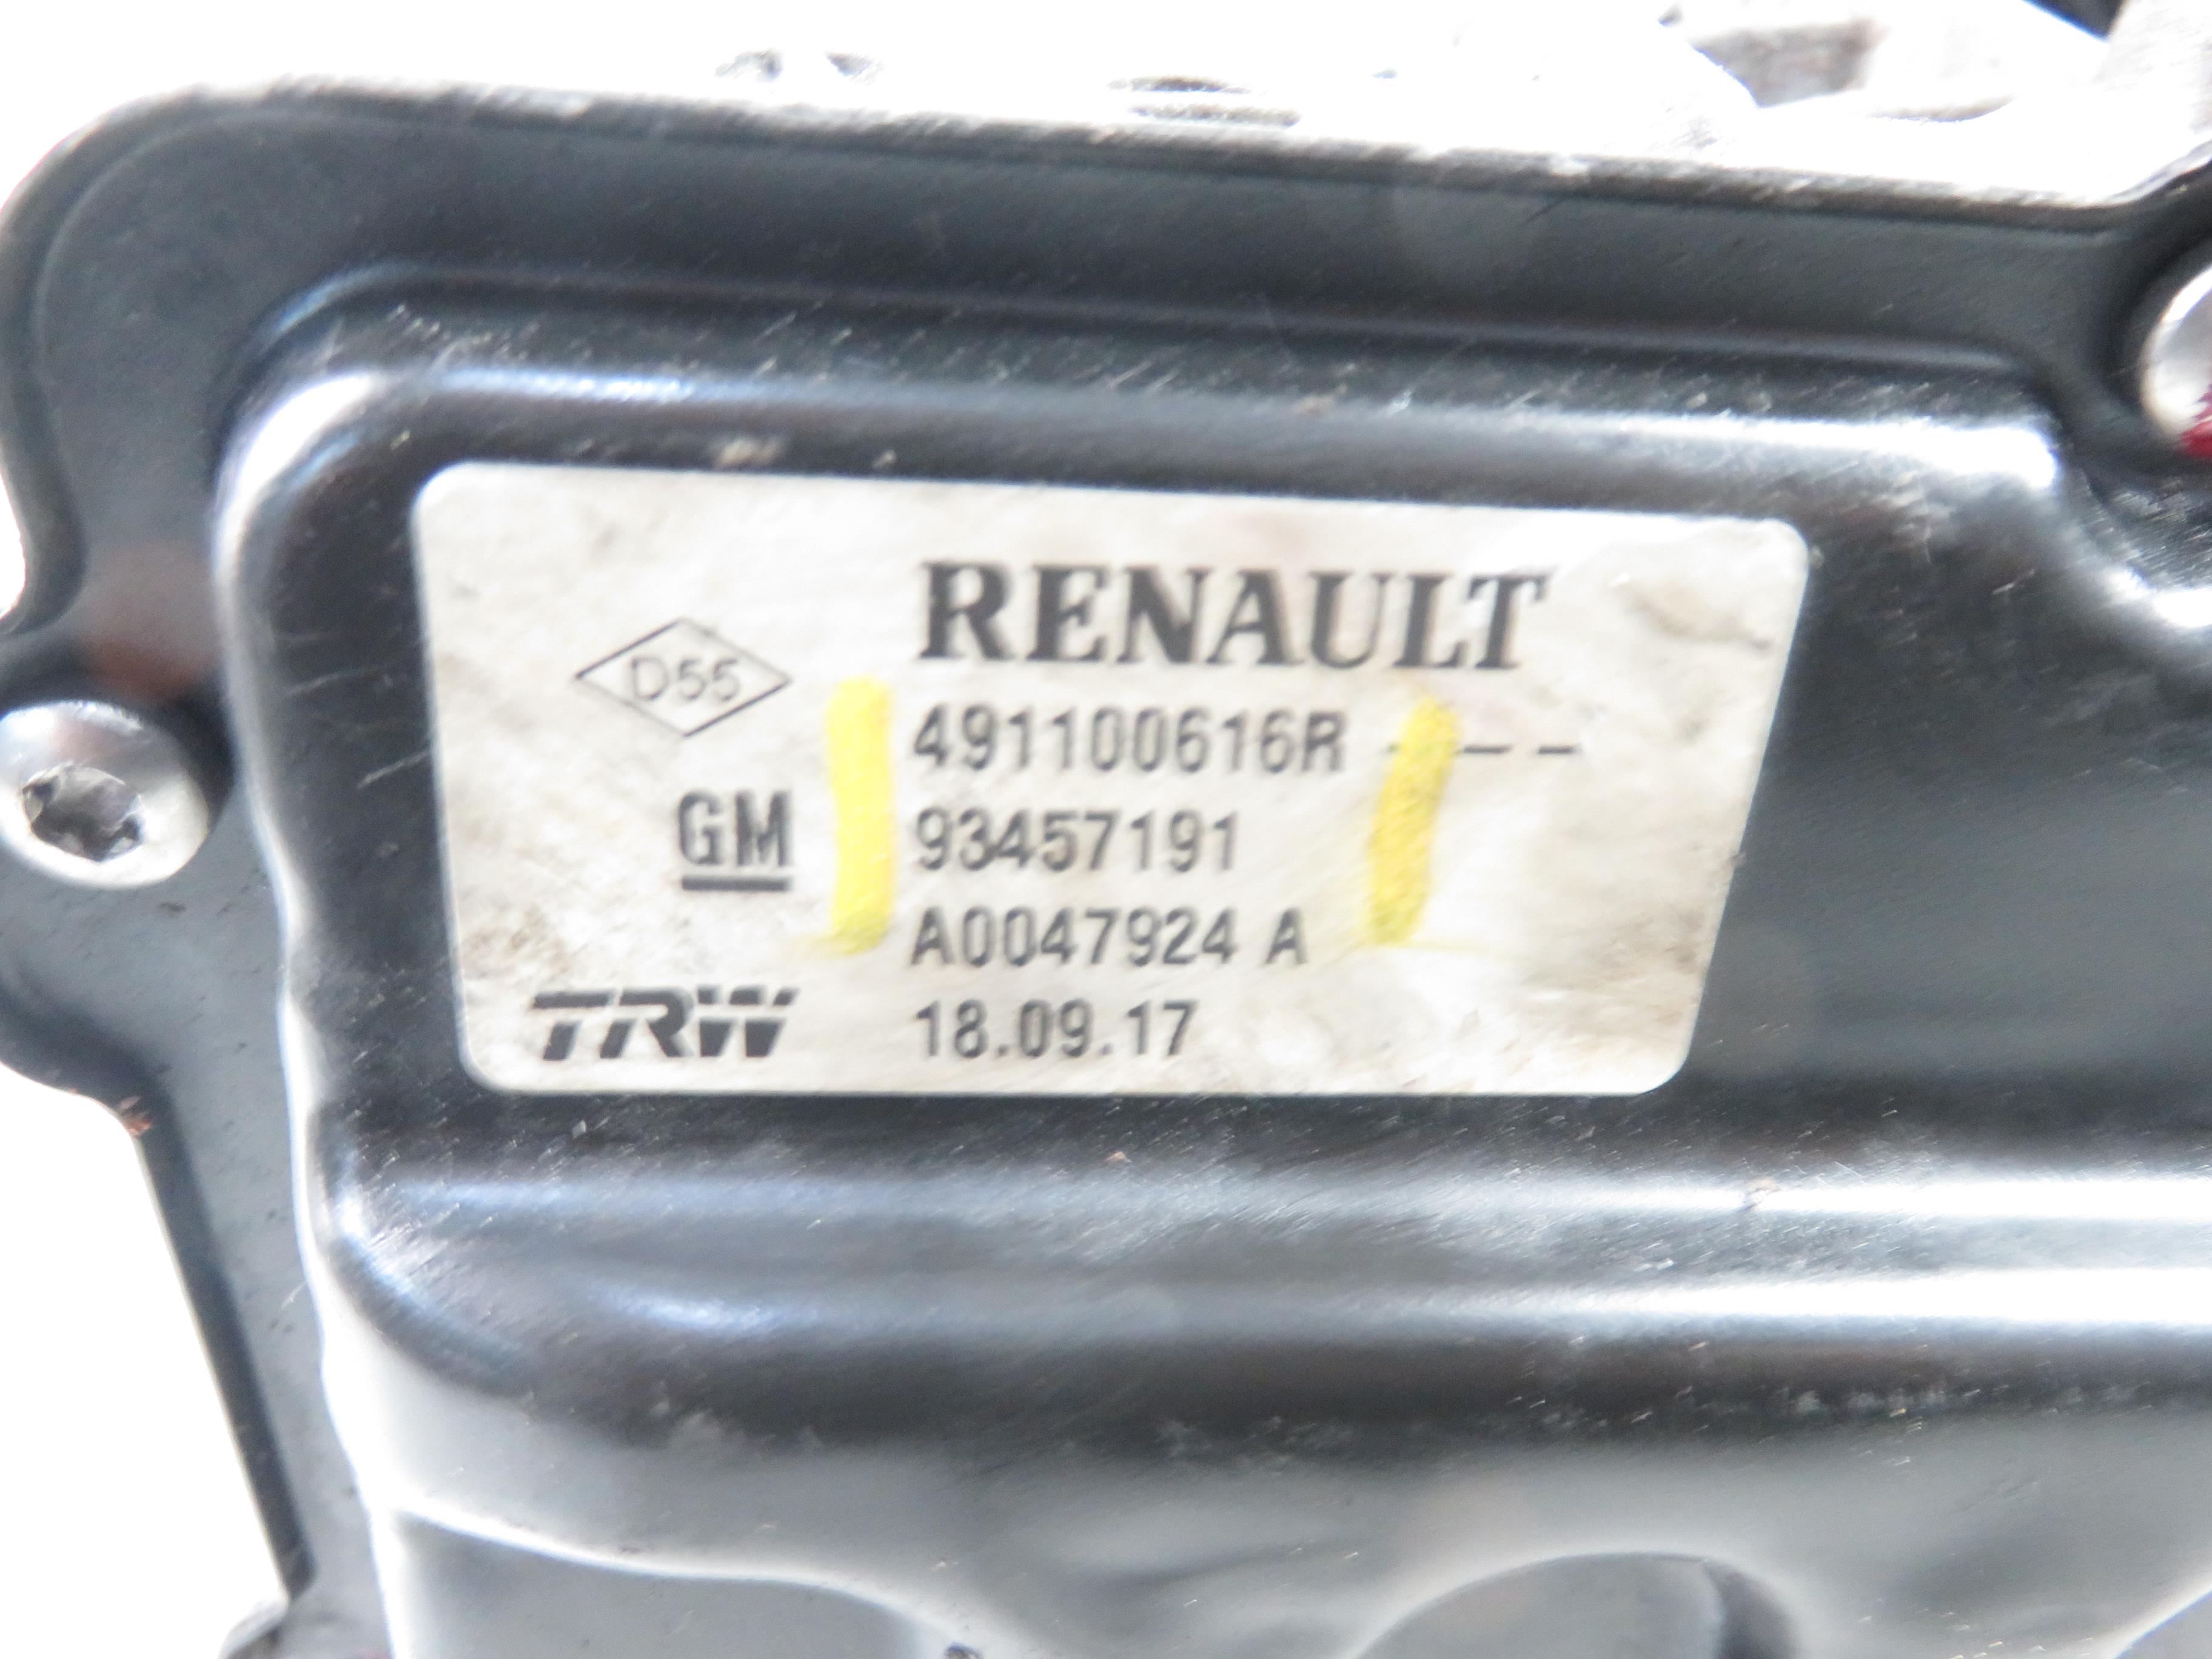 RENAULT Trafic 3 generation (2014-2023) Elektrinis vairo stiprintuvo siurblys 491100616R, 93457191 25249036